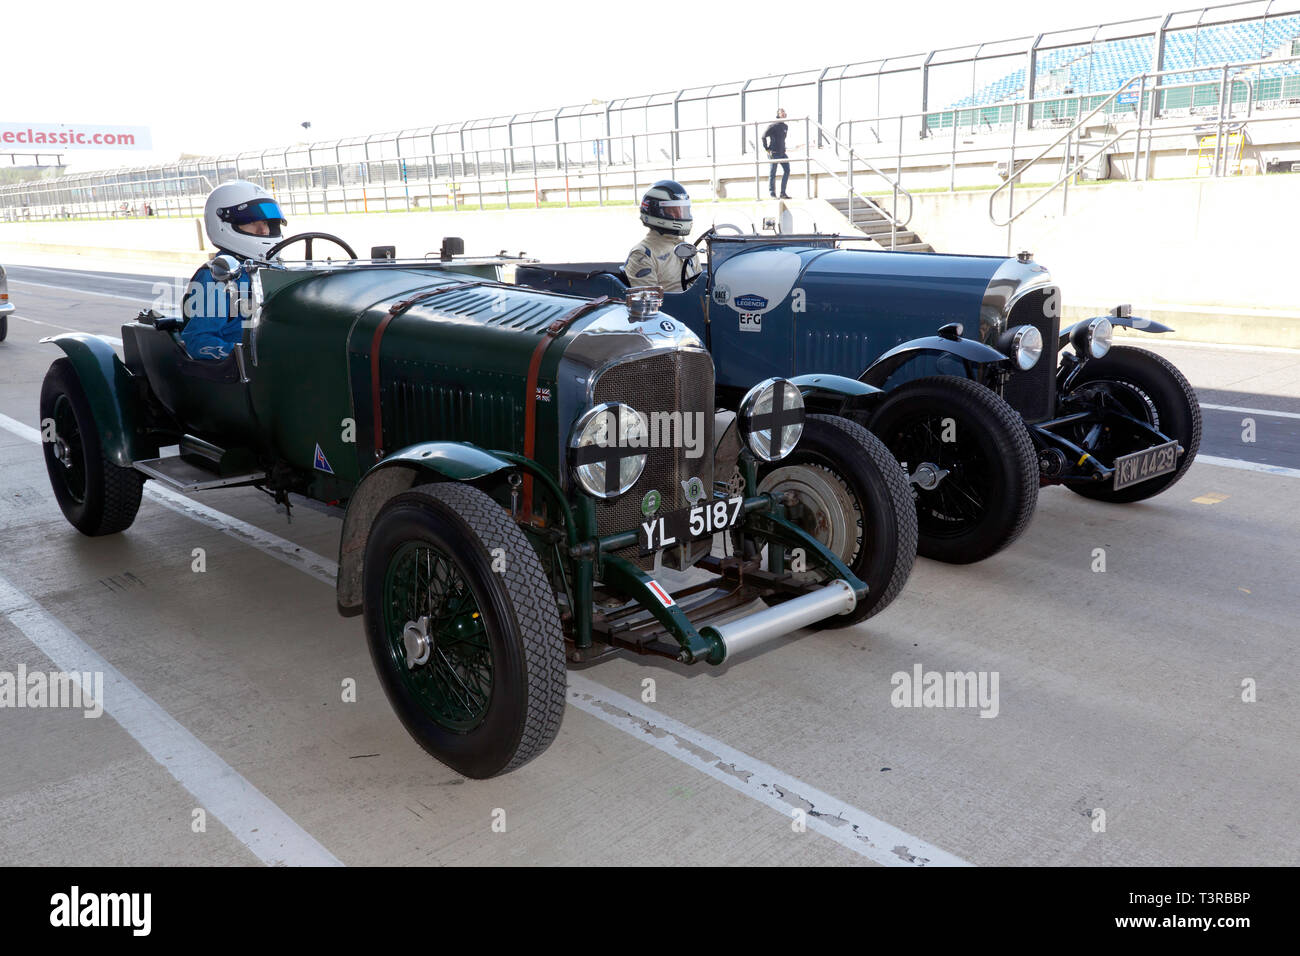 Avant-guerre, deux voitures de course Bentley s'alignent sur la voie des stands, de prendre part à une parade lap dans le cadre des célébrations du centenaire, à la Silverstone Classic Media Day 2019 Banque D'Images